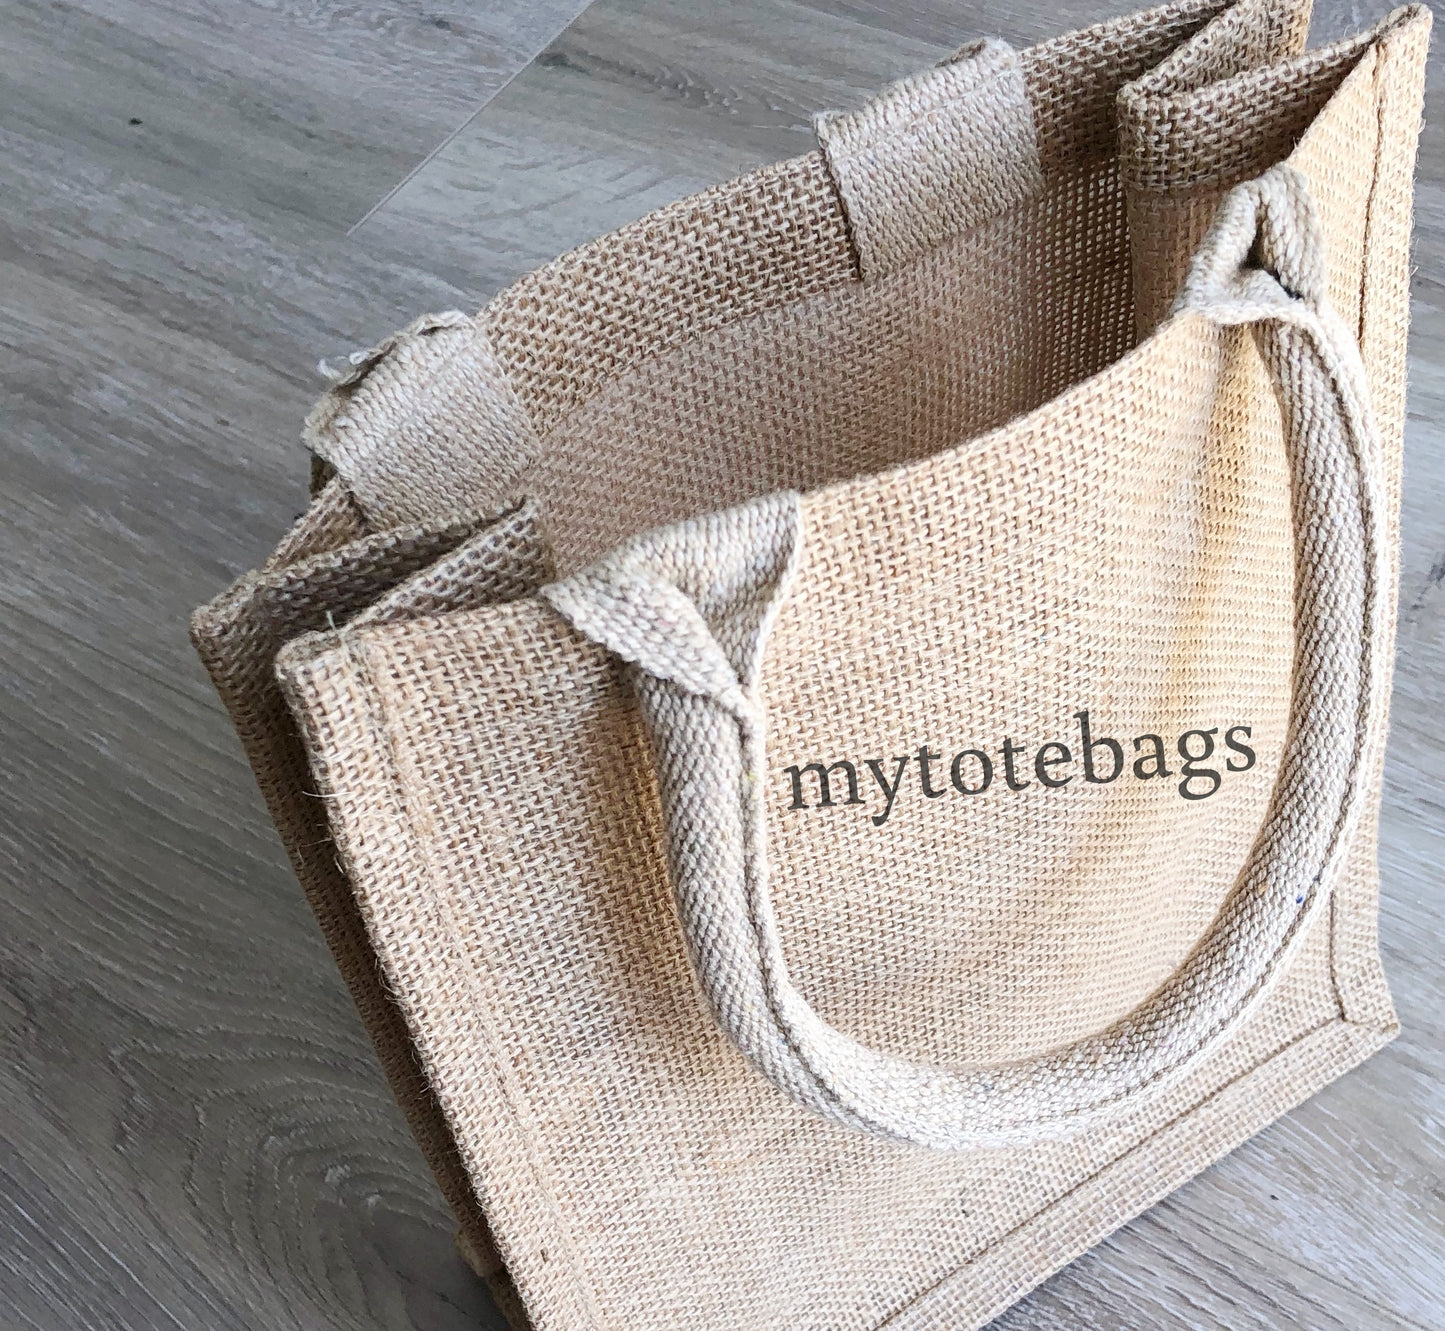 Small Size Burlap Jute Tote Bags, Blue Color Natural Rustic Gift Bag, BBS02